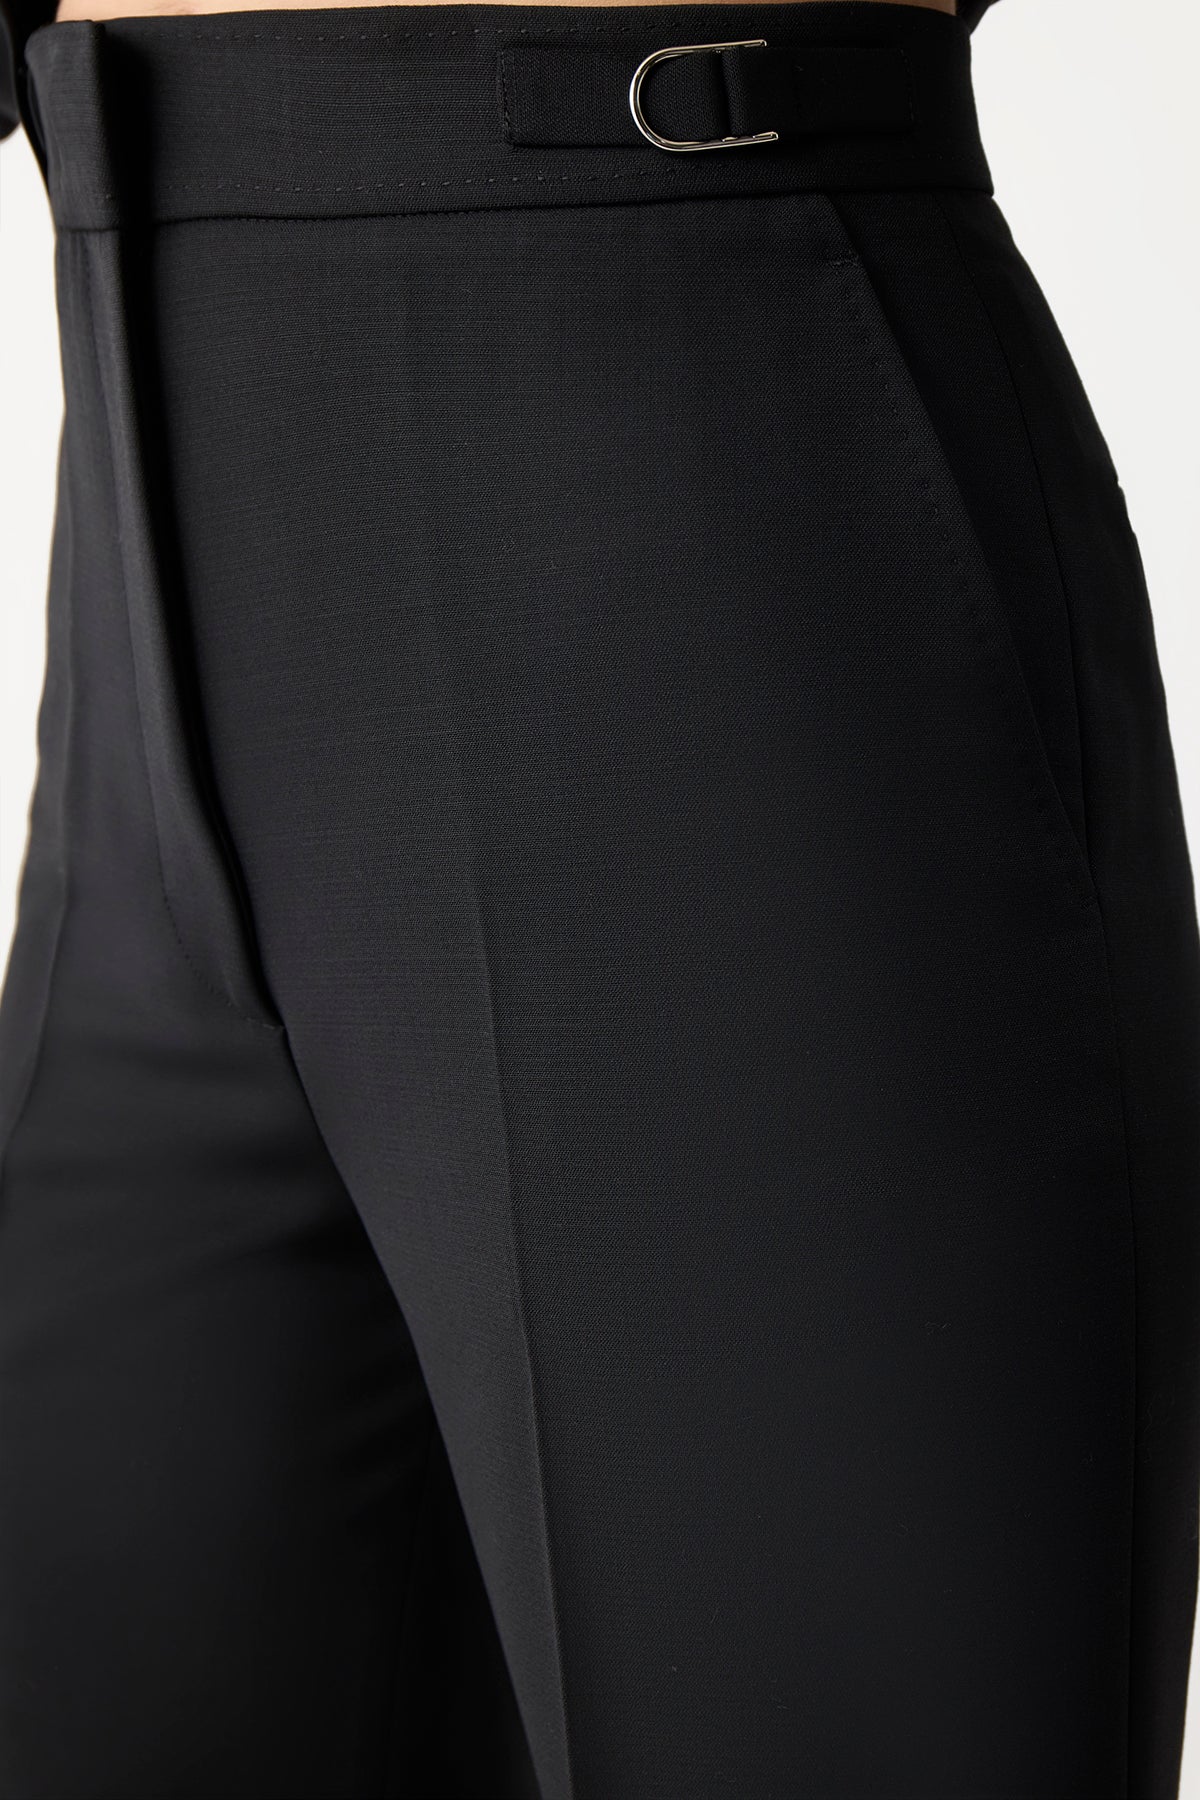 Vesta Pant in Black Sportswear Wool